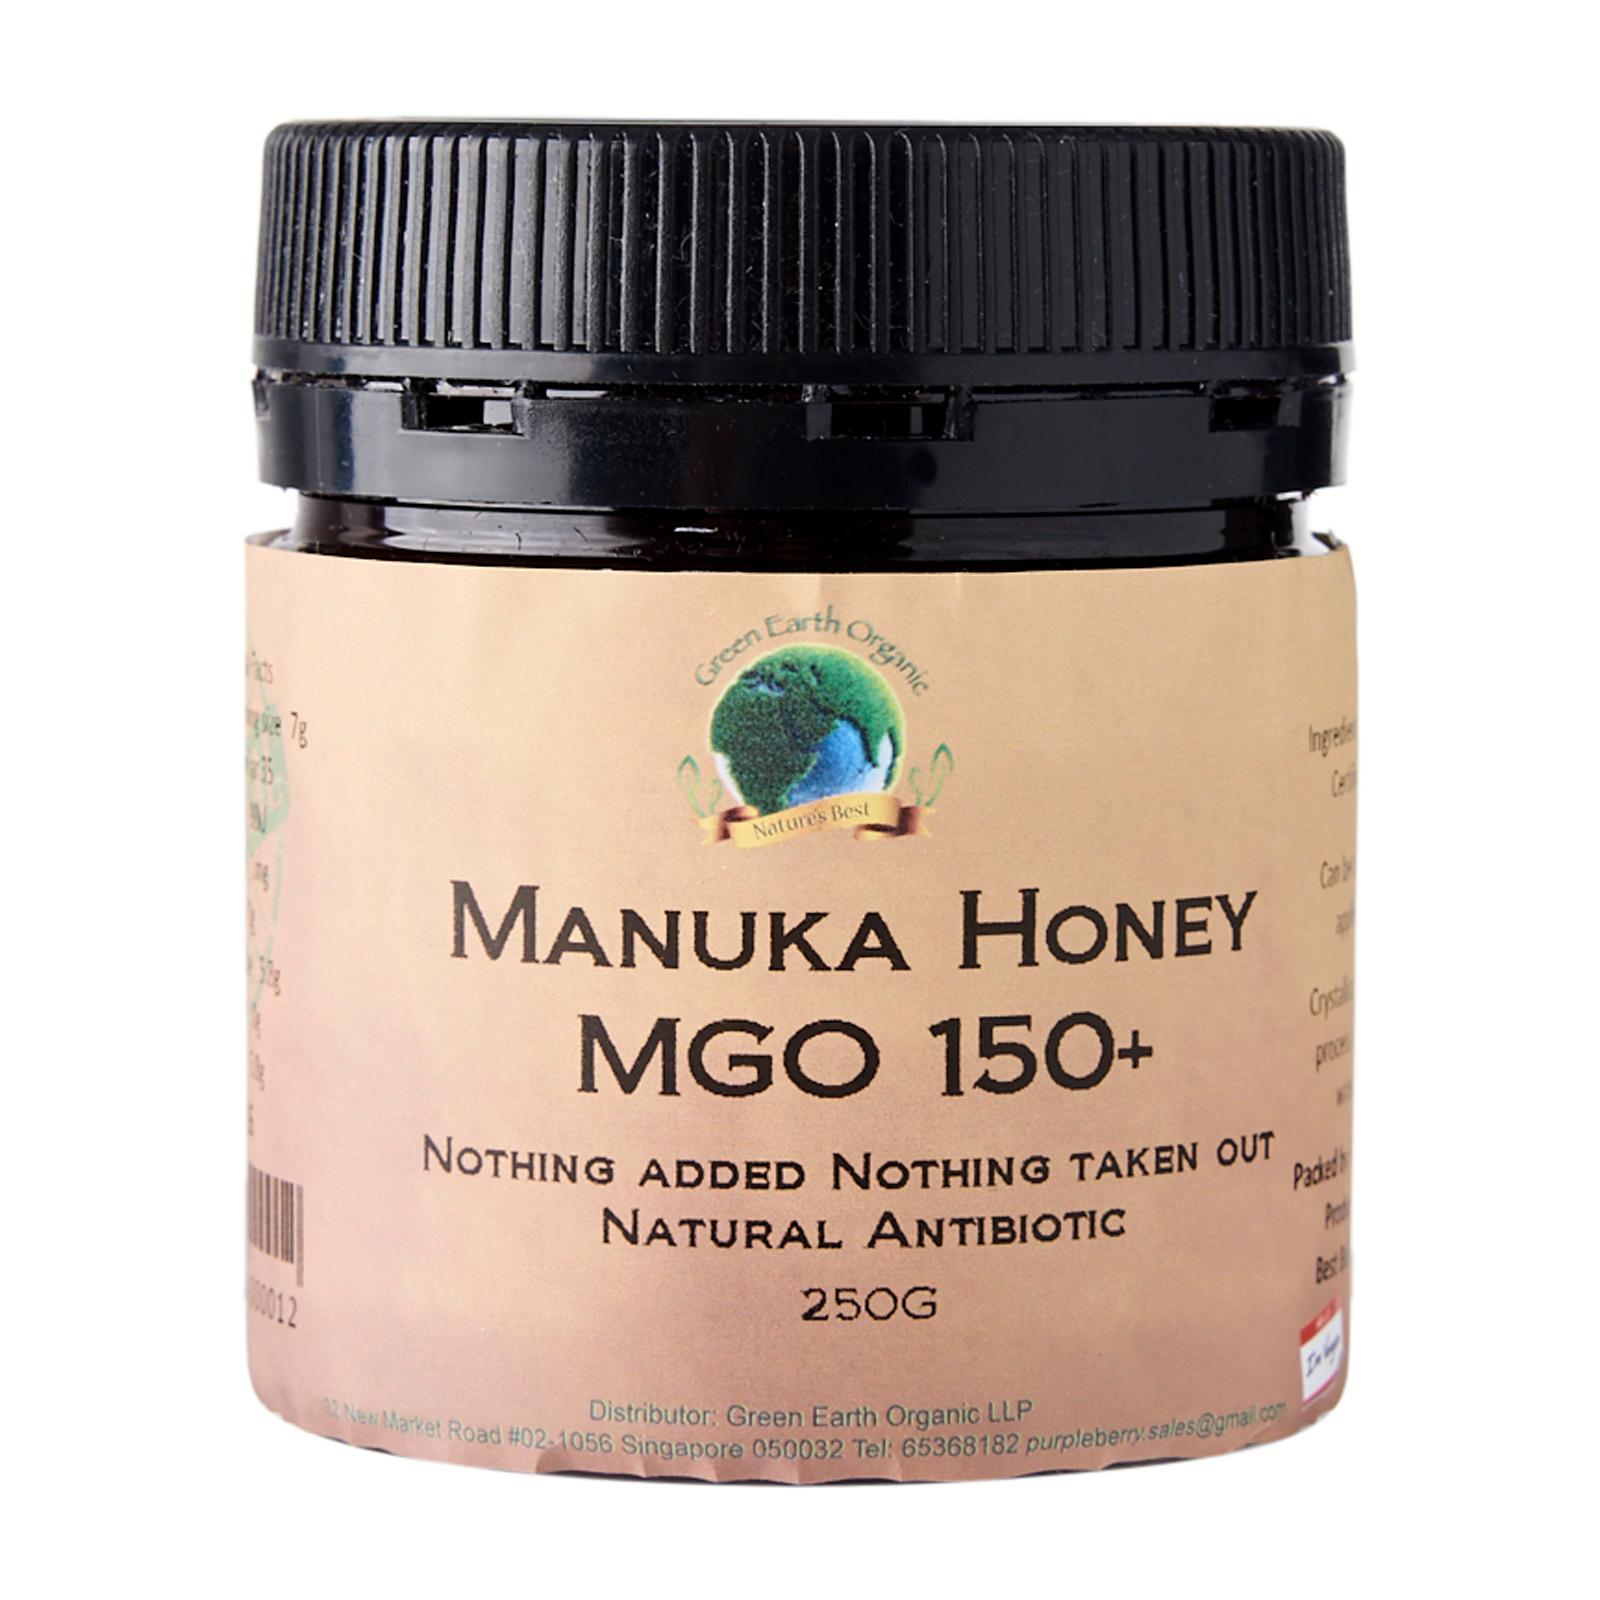 Manuka Honey MGO 150+